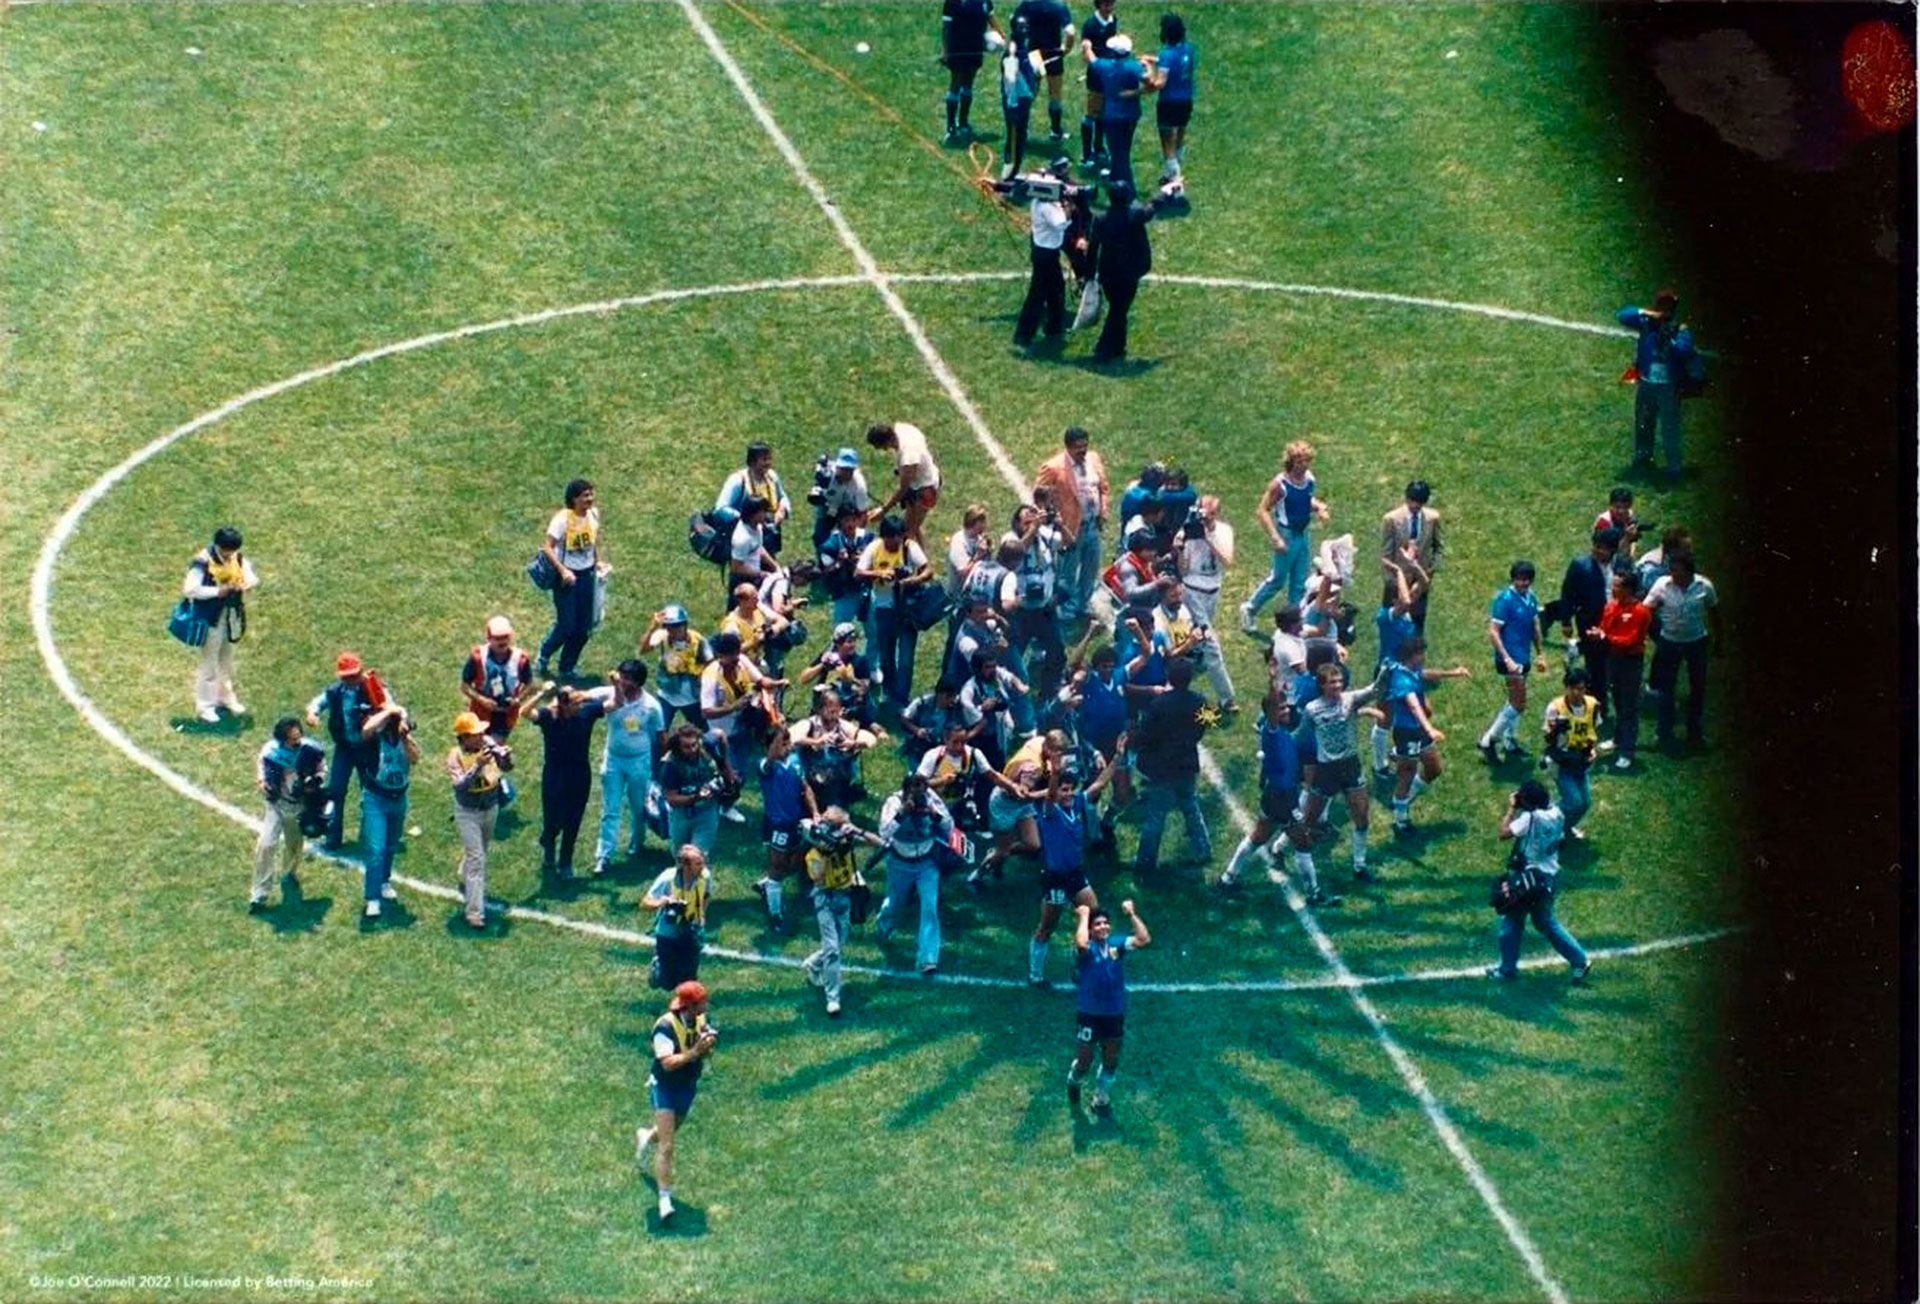 La celebración de la selección argentina ante los ingleses en México 86 (@Diego10Querido)